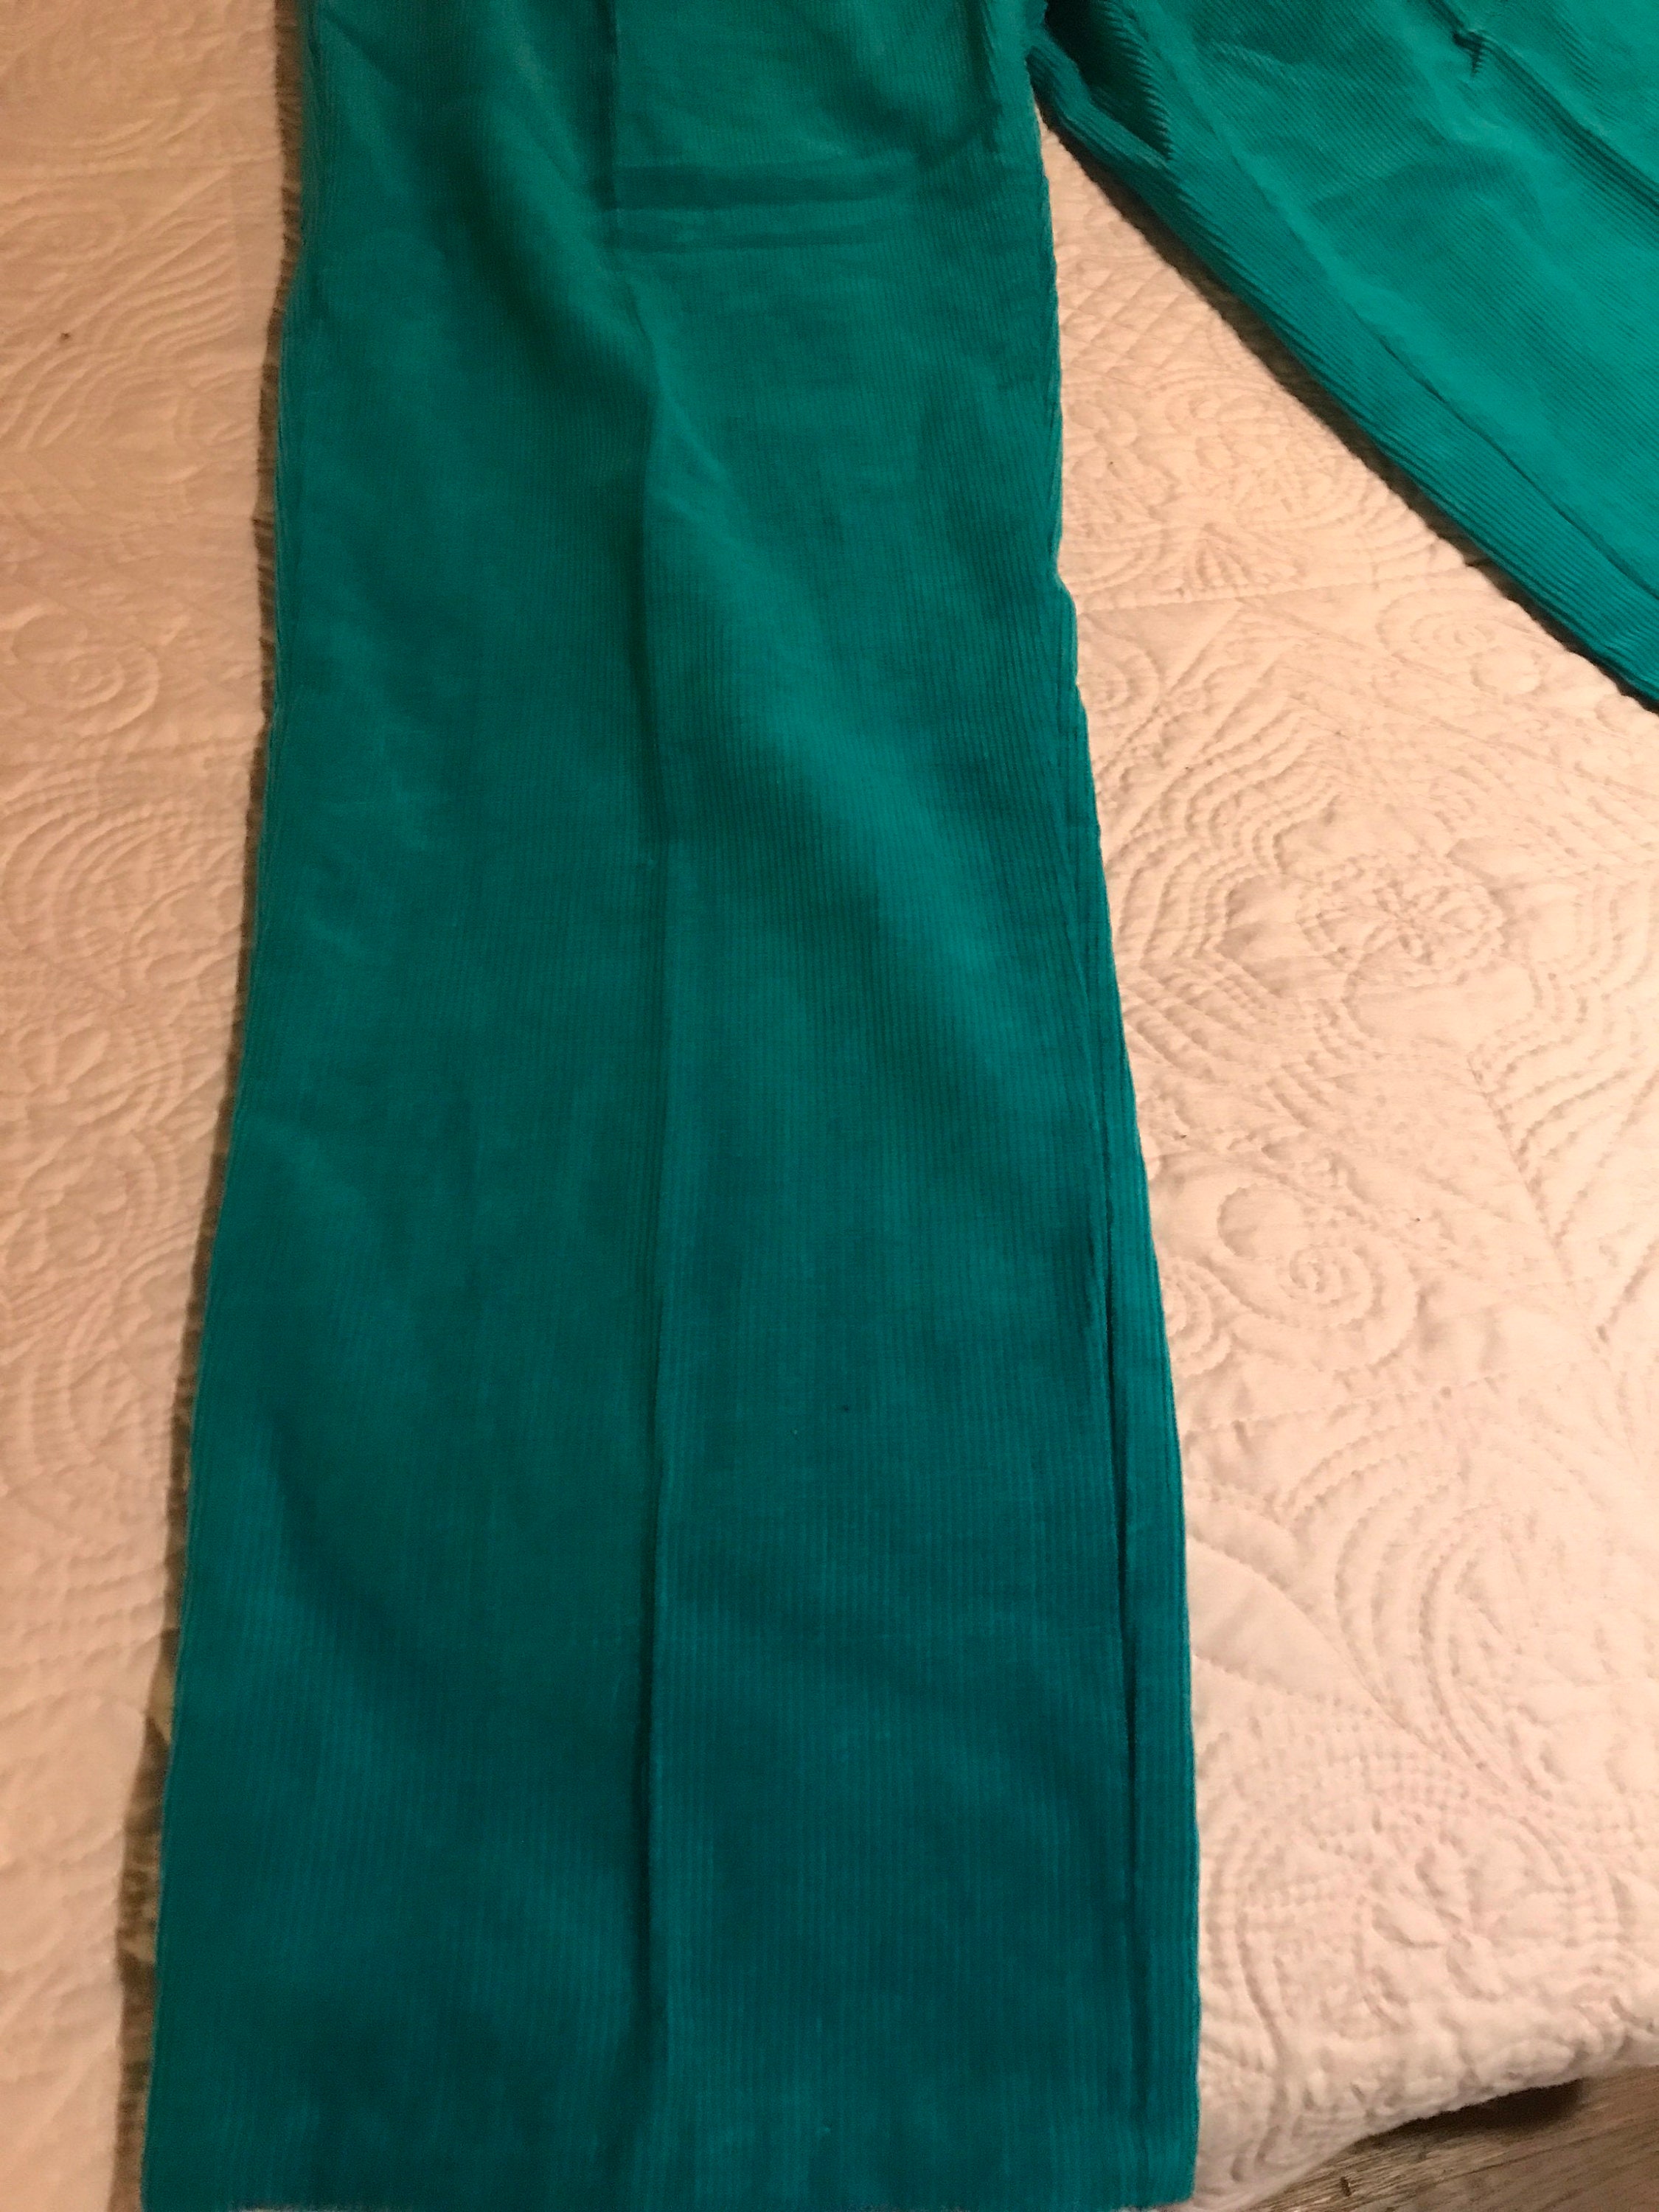 Vintage Corduroy Pants. Turquoise Corduroy Pants. 1980s Turquoise Pants ...